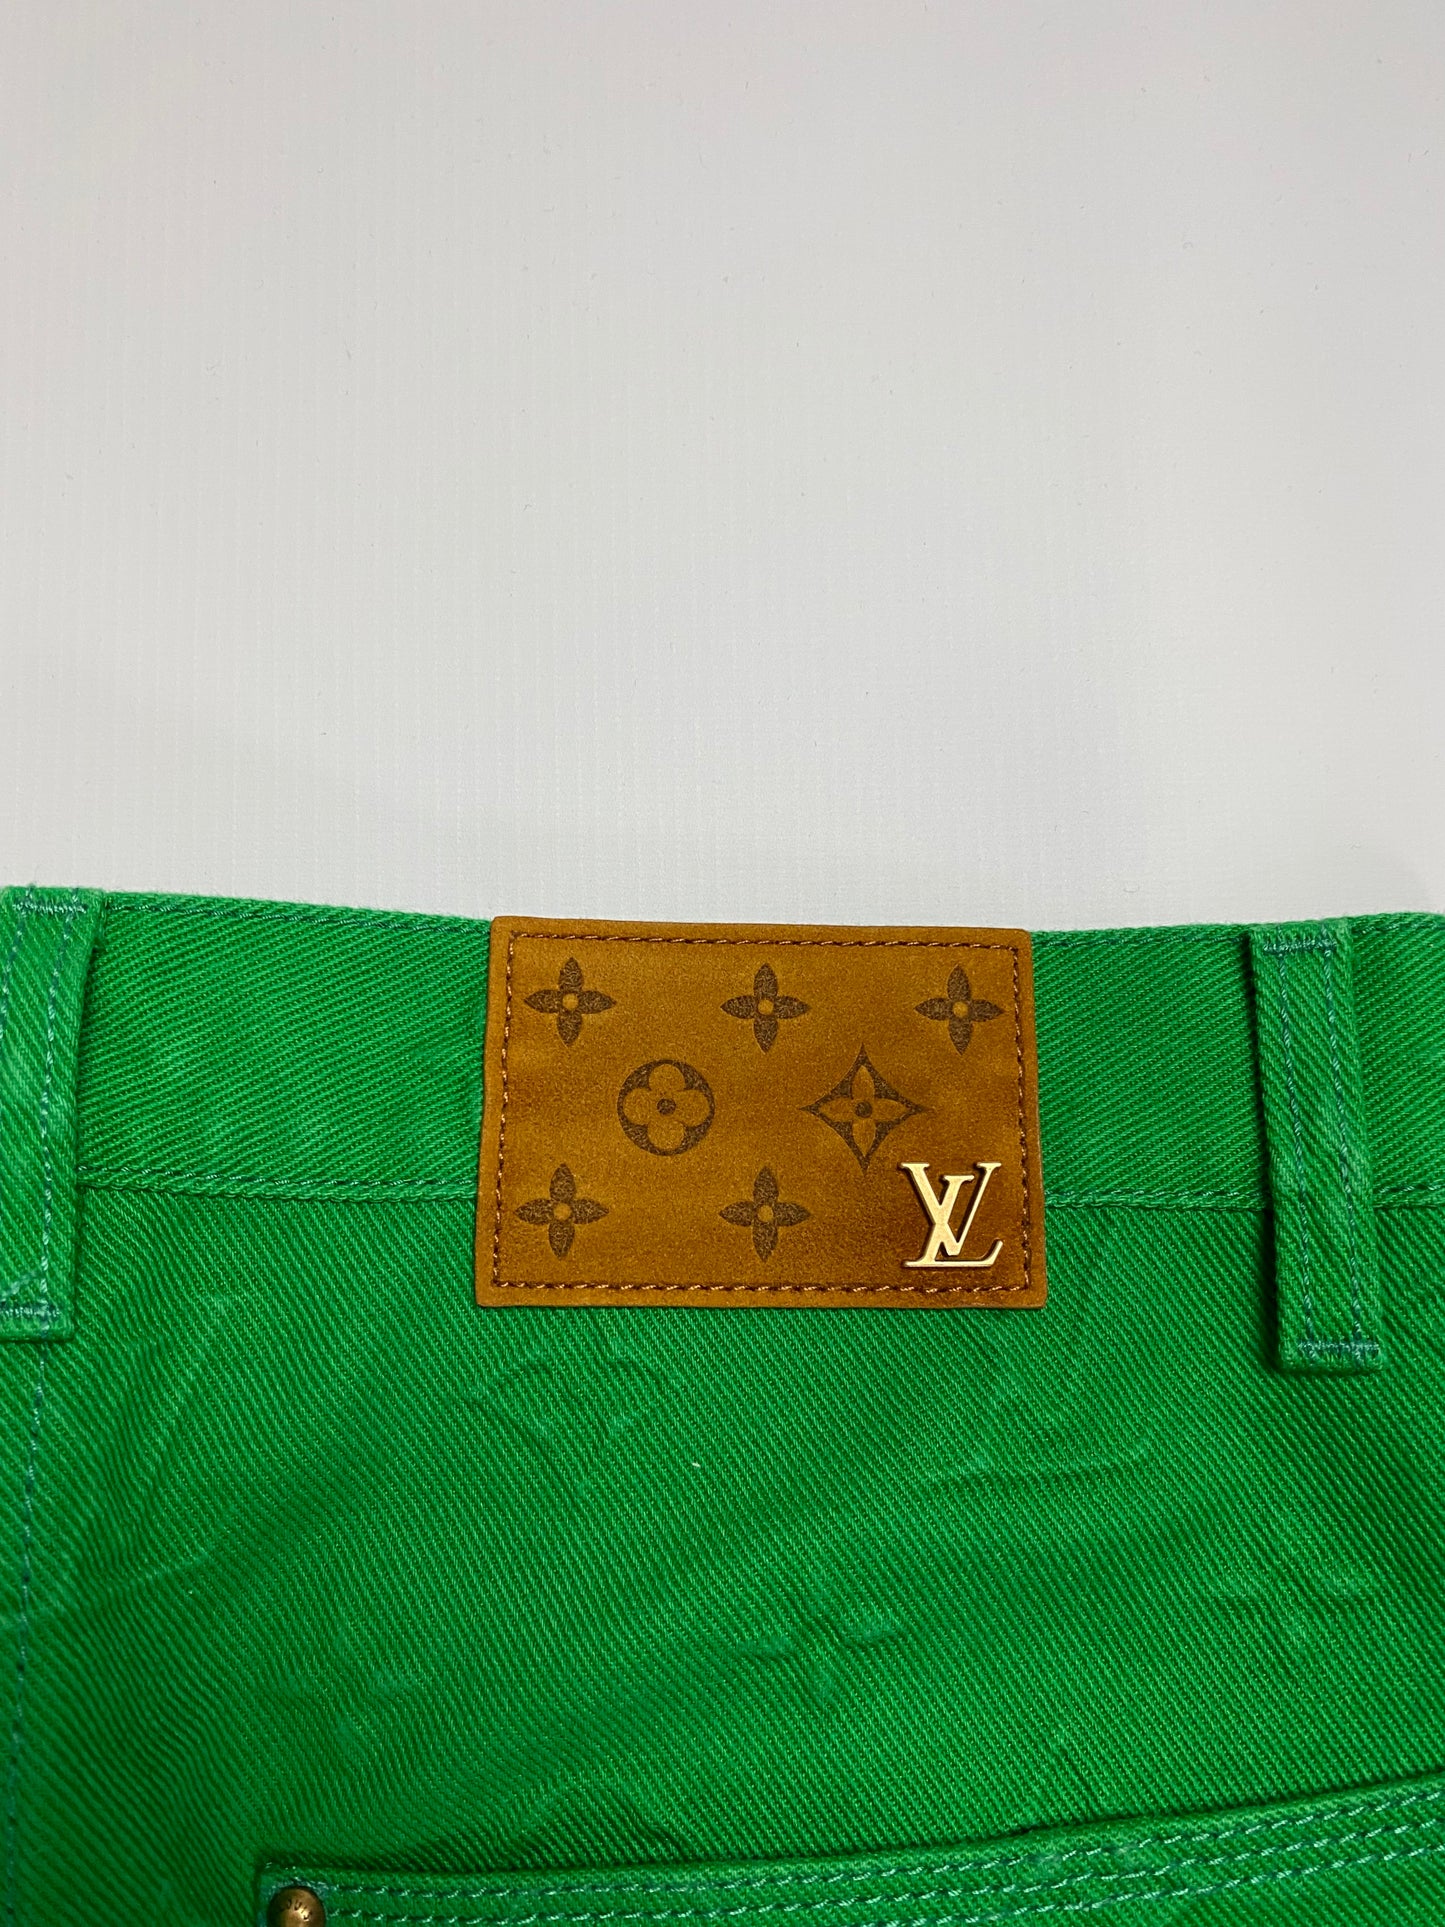 Louis Vuitton Louis Vuitton Virgil Abloh Cream LV monogram carpenter jeans